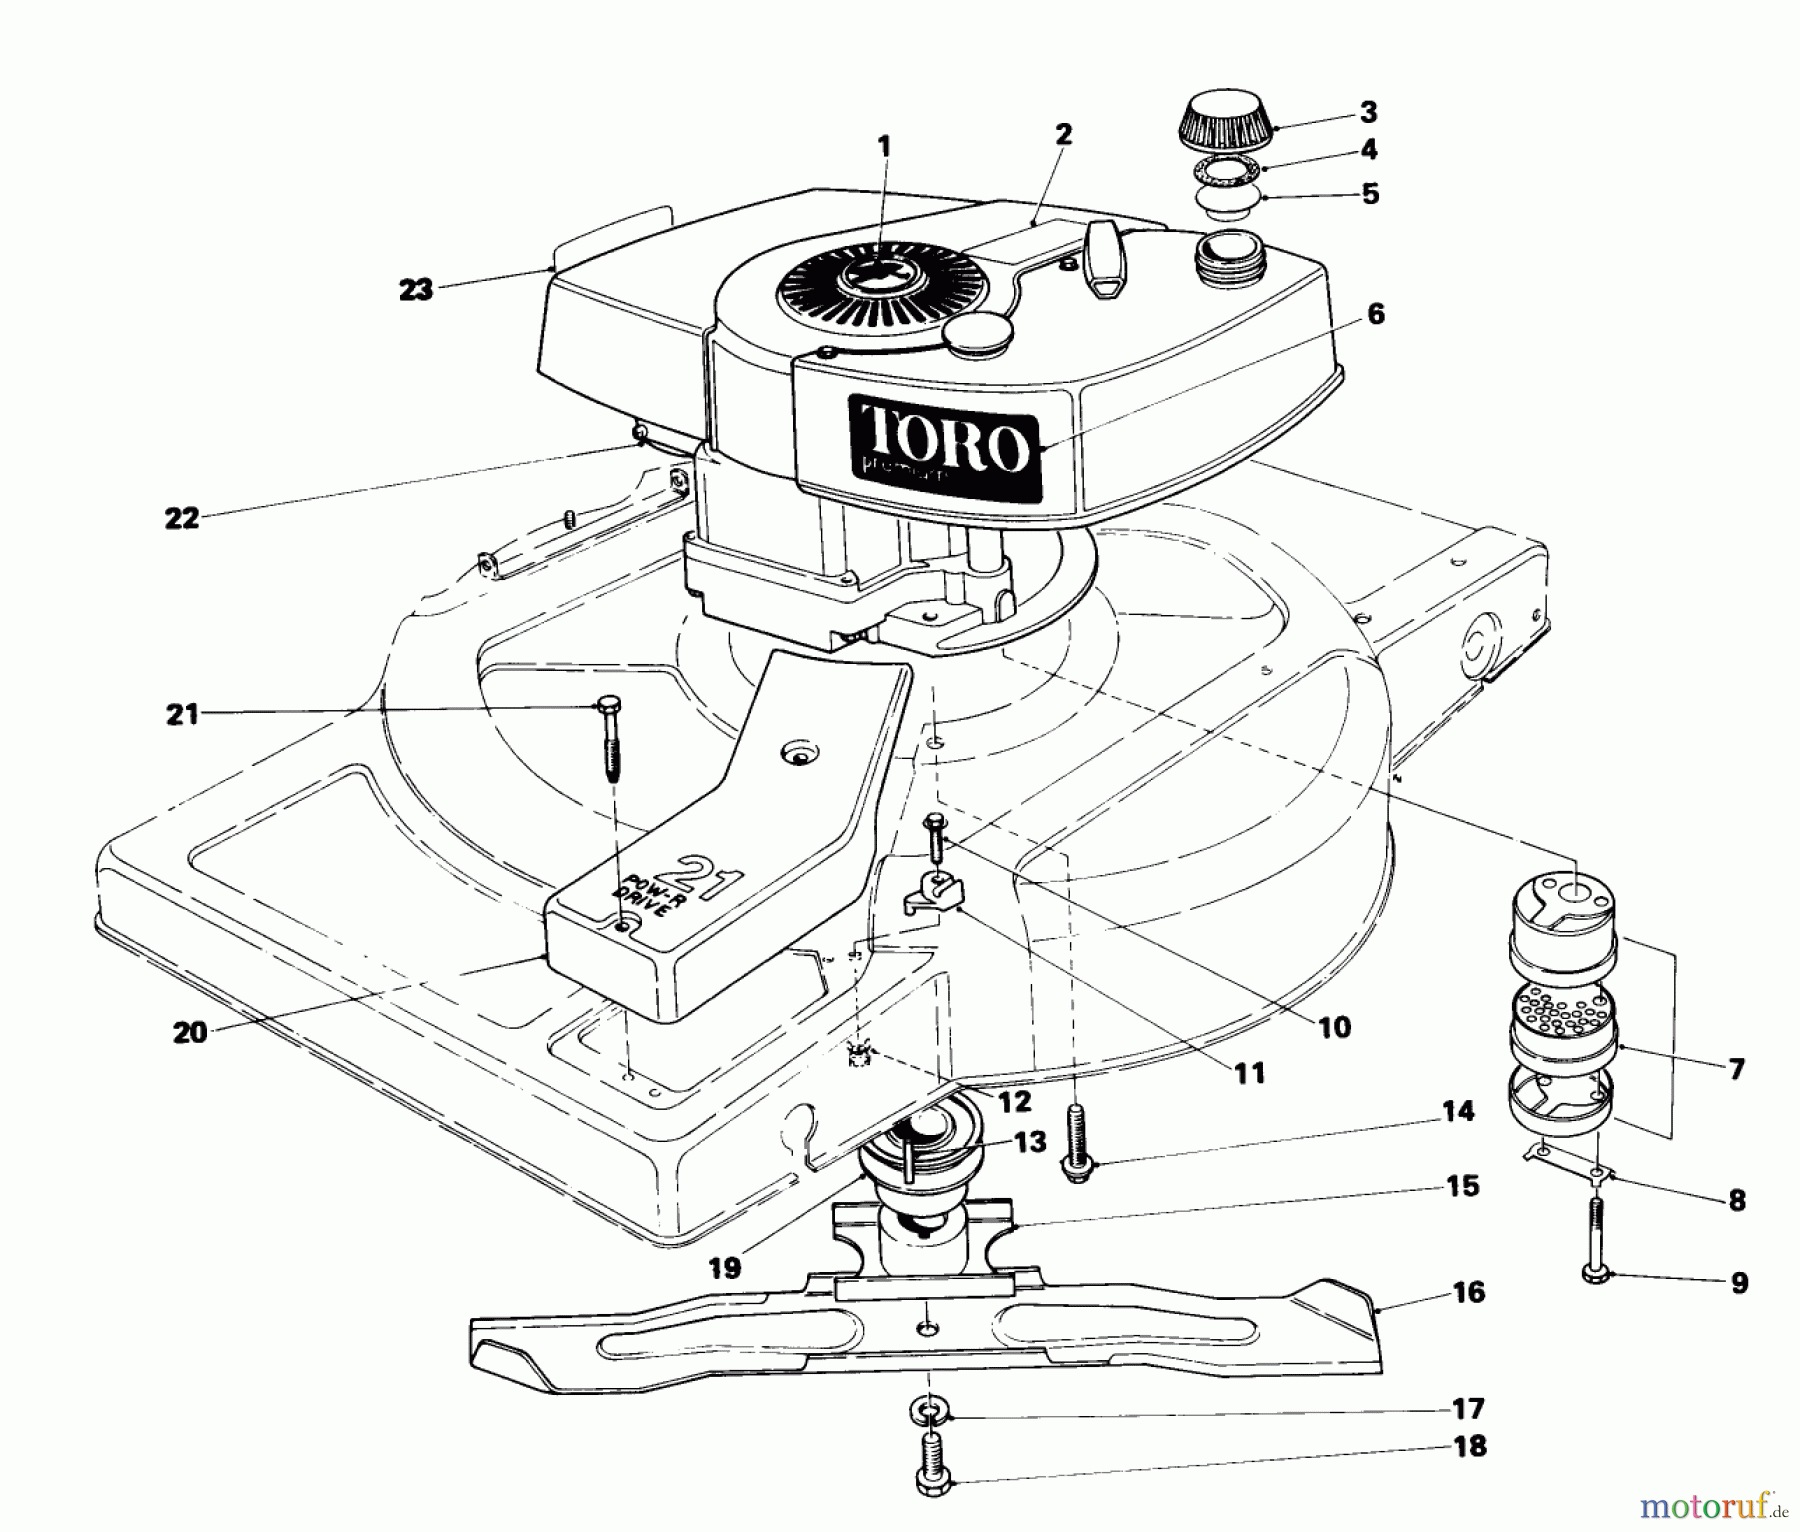  Toro Neu Mowers, Walk-Behind Seite 1 18005 - Toro Lawnmower, 1981 (1000001-1999999) ENGINE ASSEMBLY (MODEL 18010)